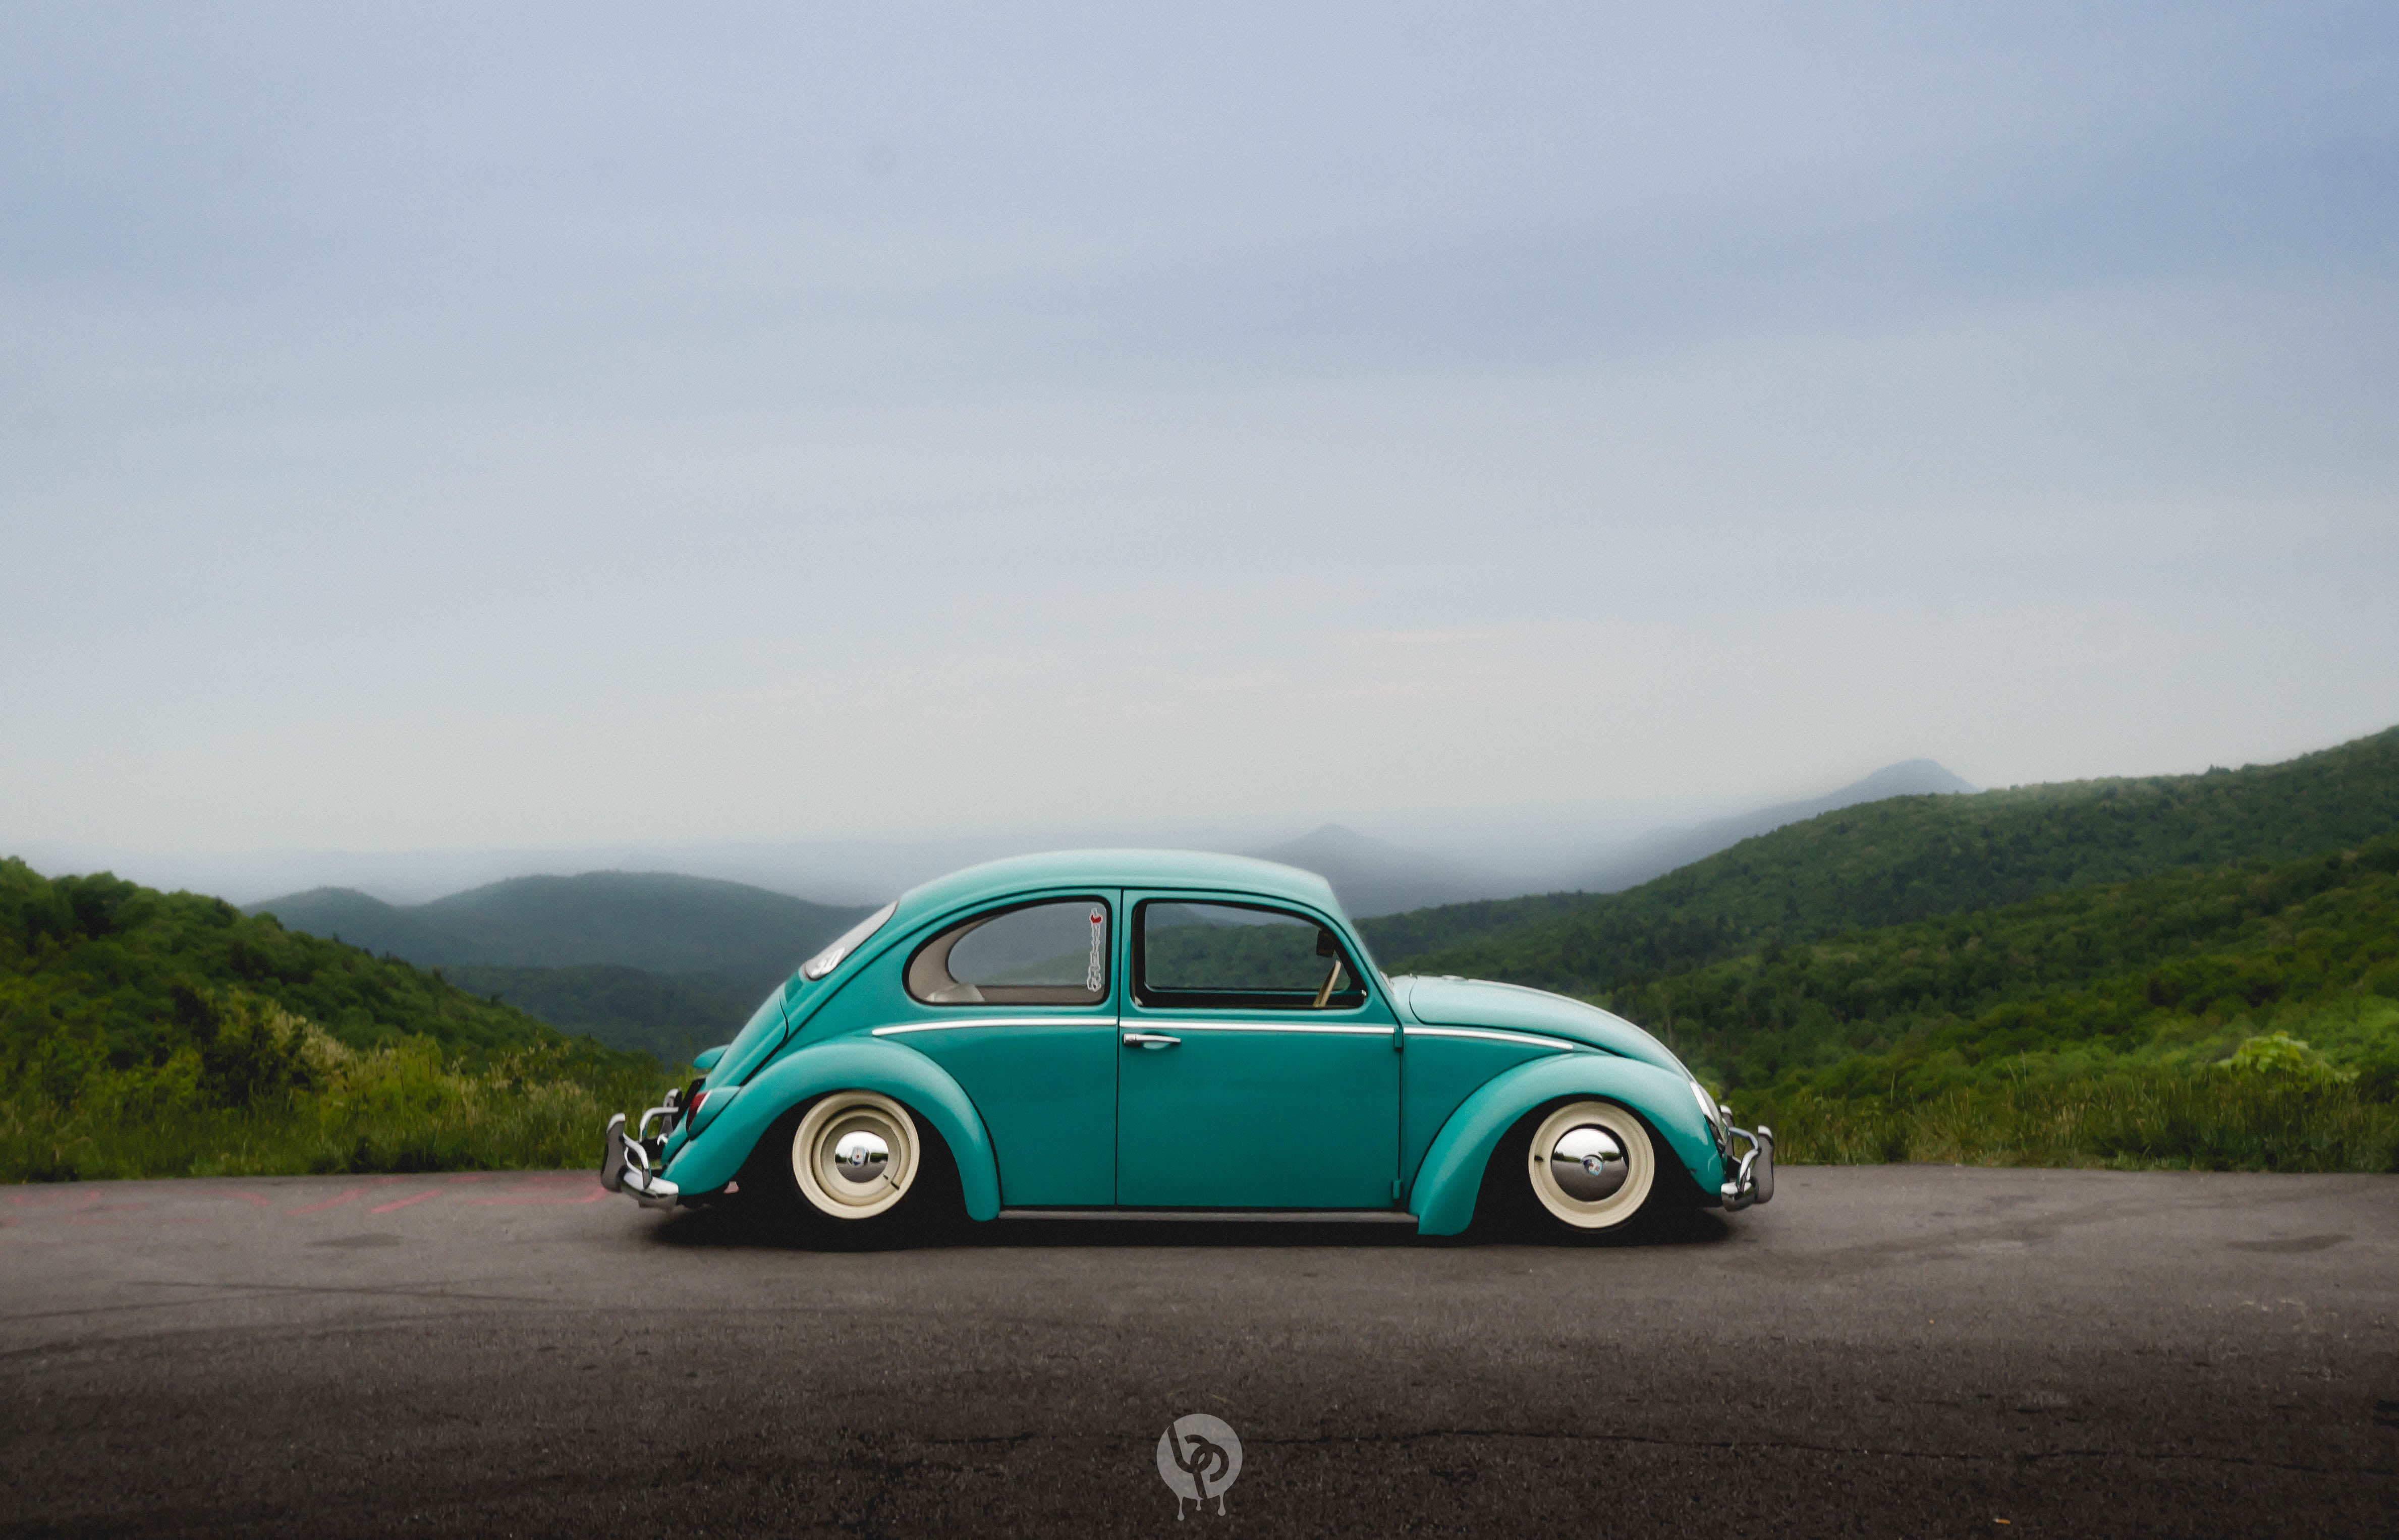 Vw Beetle , HD Wallpaper & Backgrounds